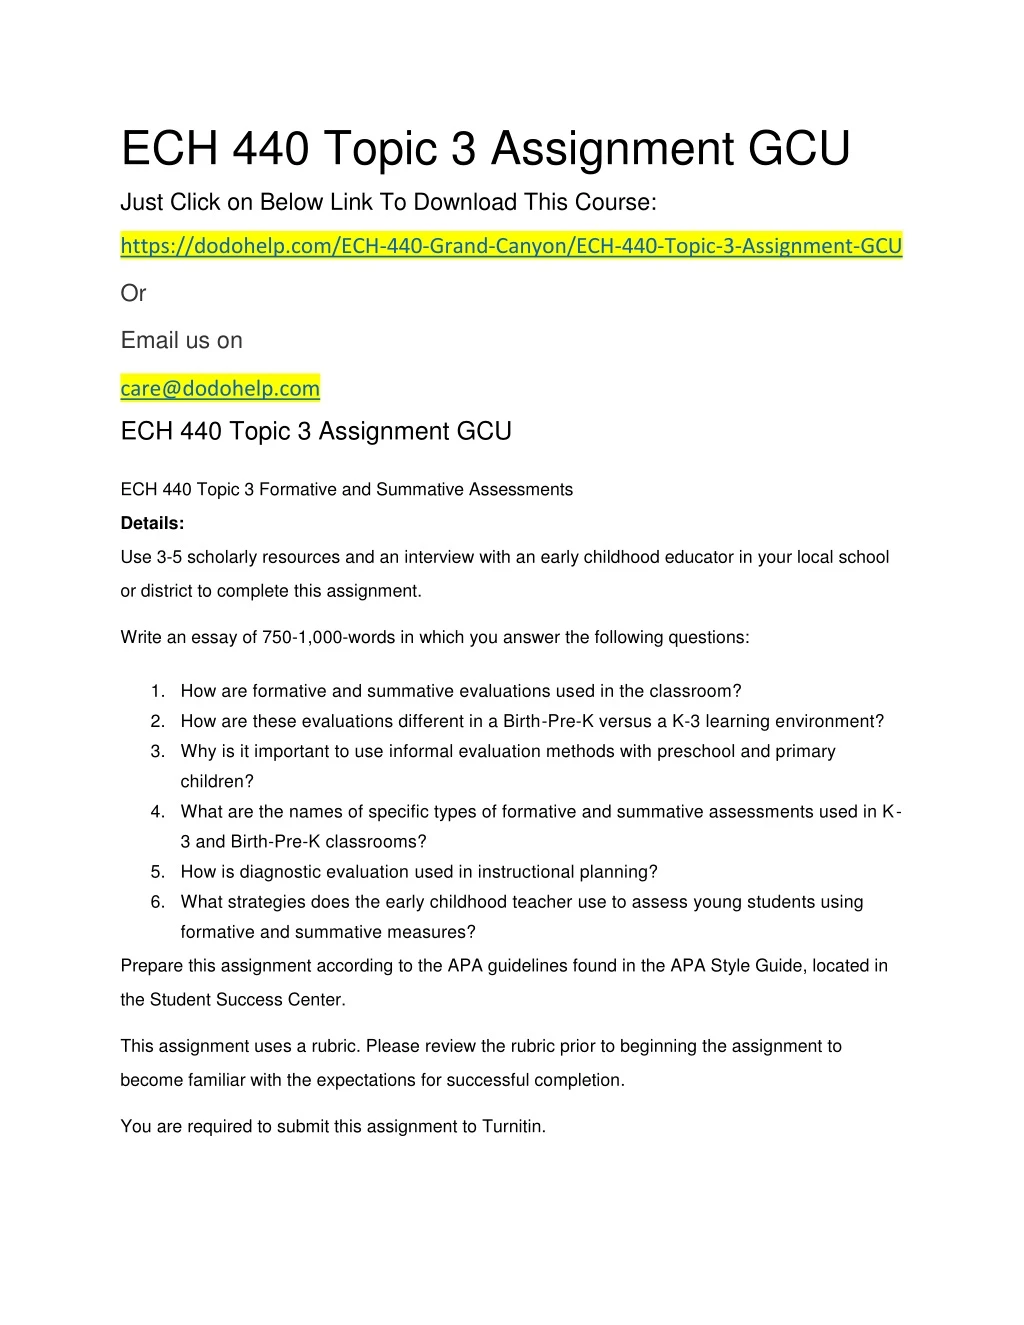 ech 440 topic 3 assignment gcu